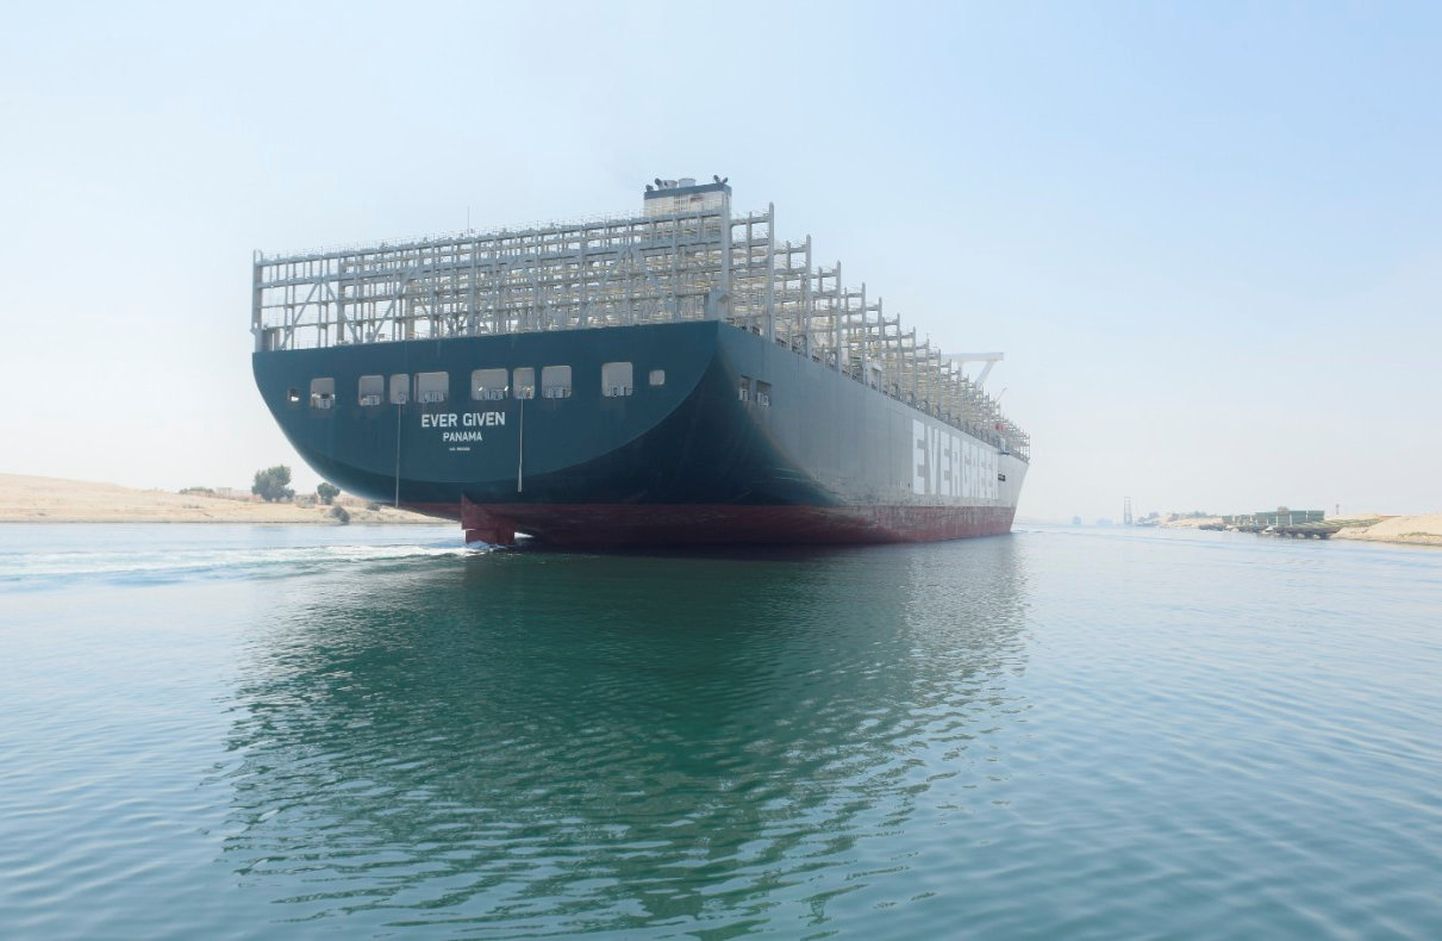 Maailma suurimaid konteinerlaevu Ever Given käesoleva aasta 20. augustil Suessi kanalit läbimas.